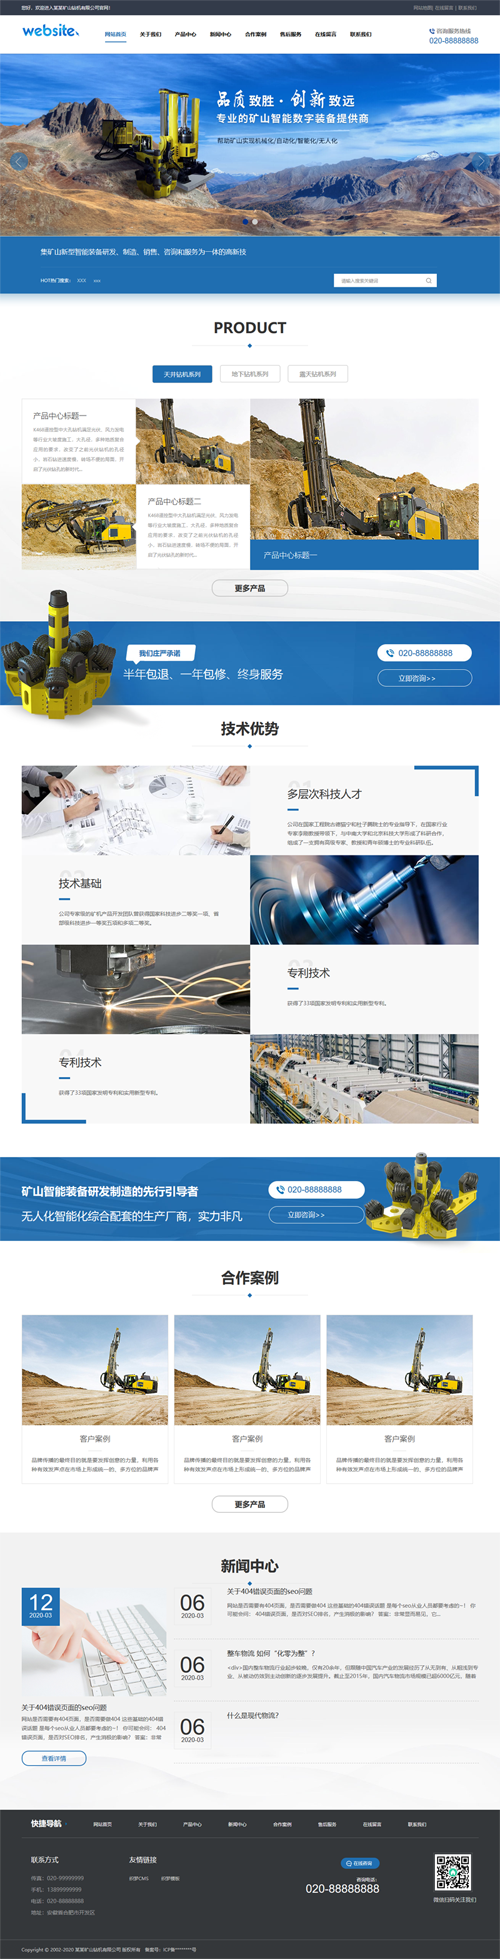 机械设备工程设备模版网站